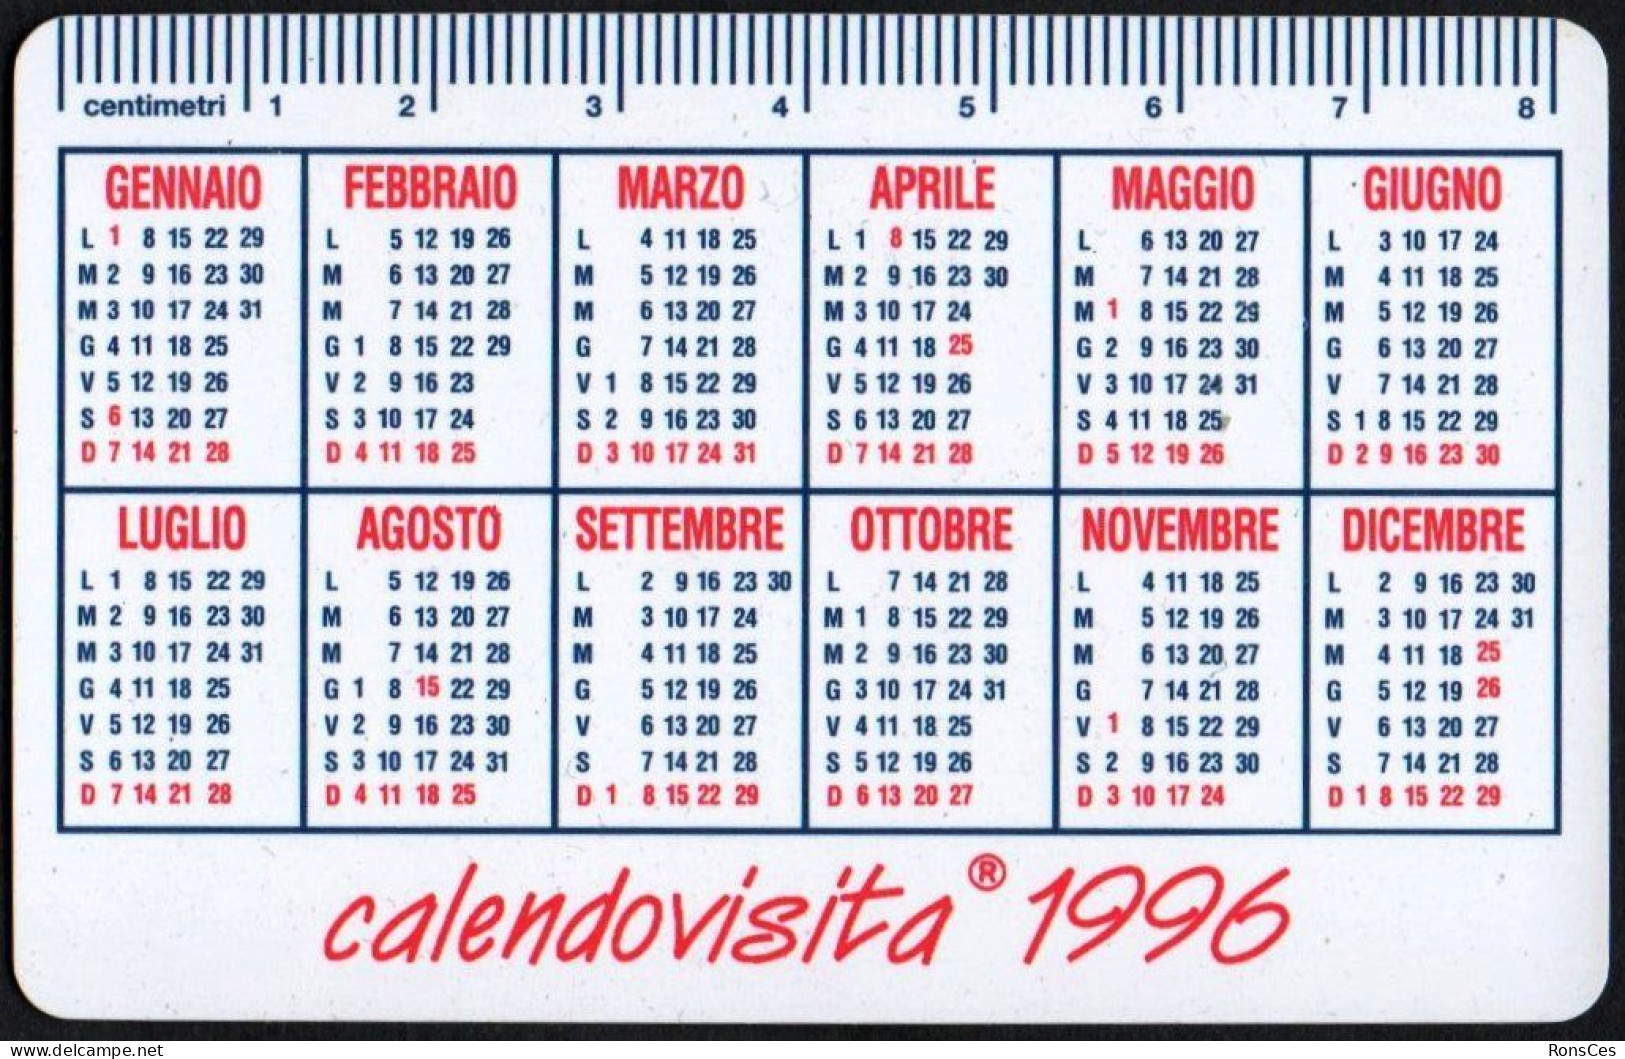 ITALIA 1996 - CALENDARIO TASCABILE - ANTONINO PLEIMES - SPECIALISTA IN FILATELIA - CALENDOVISITA 1996 - I - Small : 1991-00